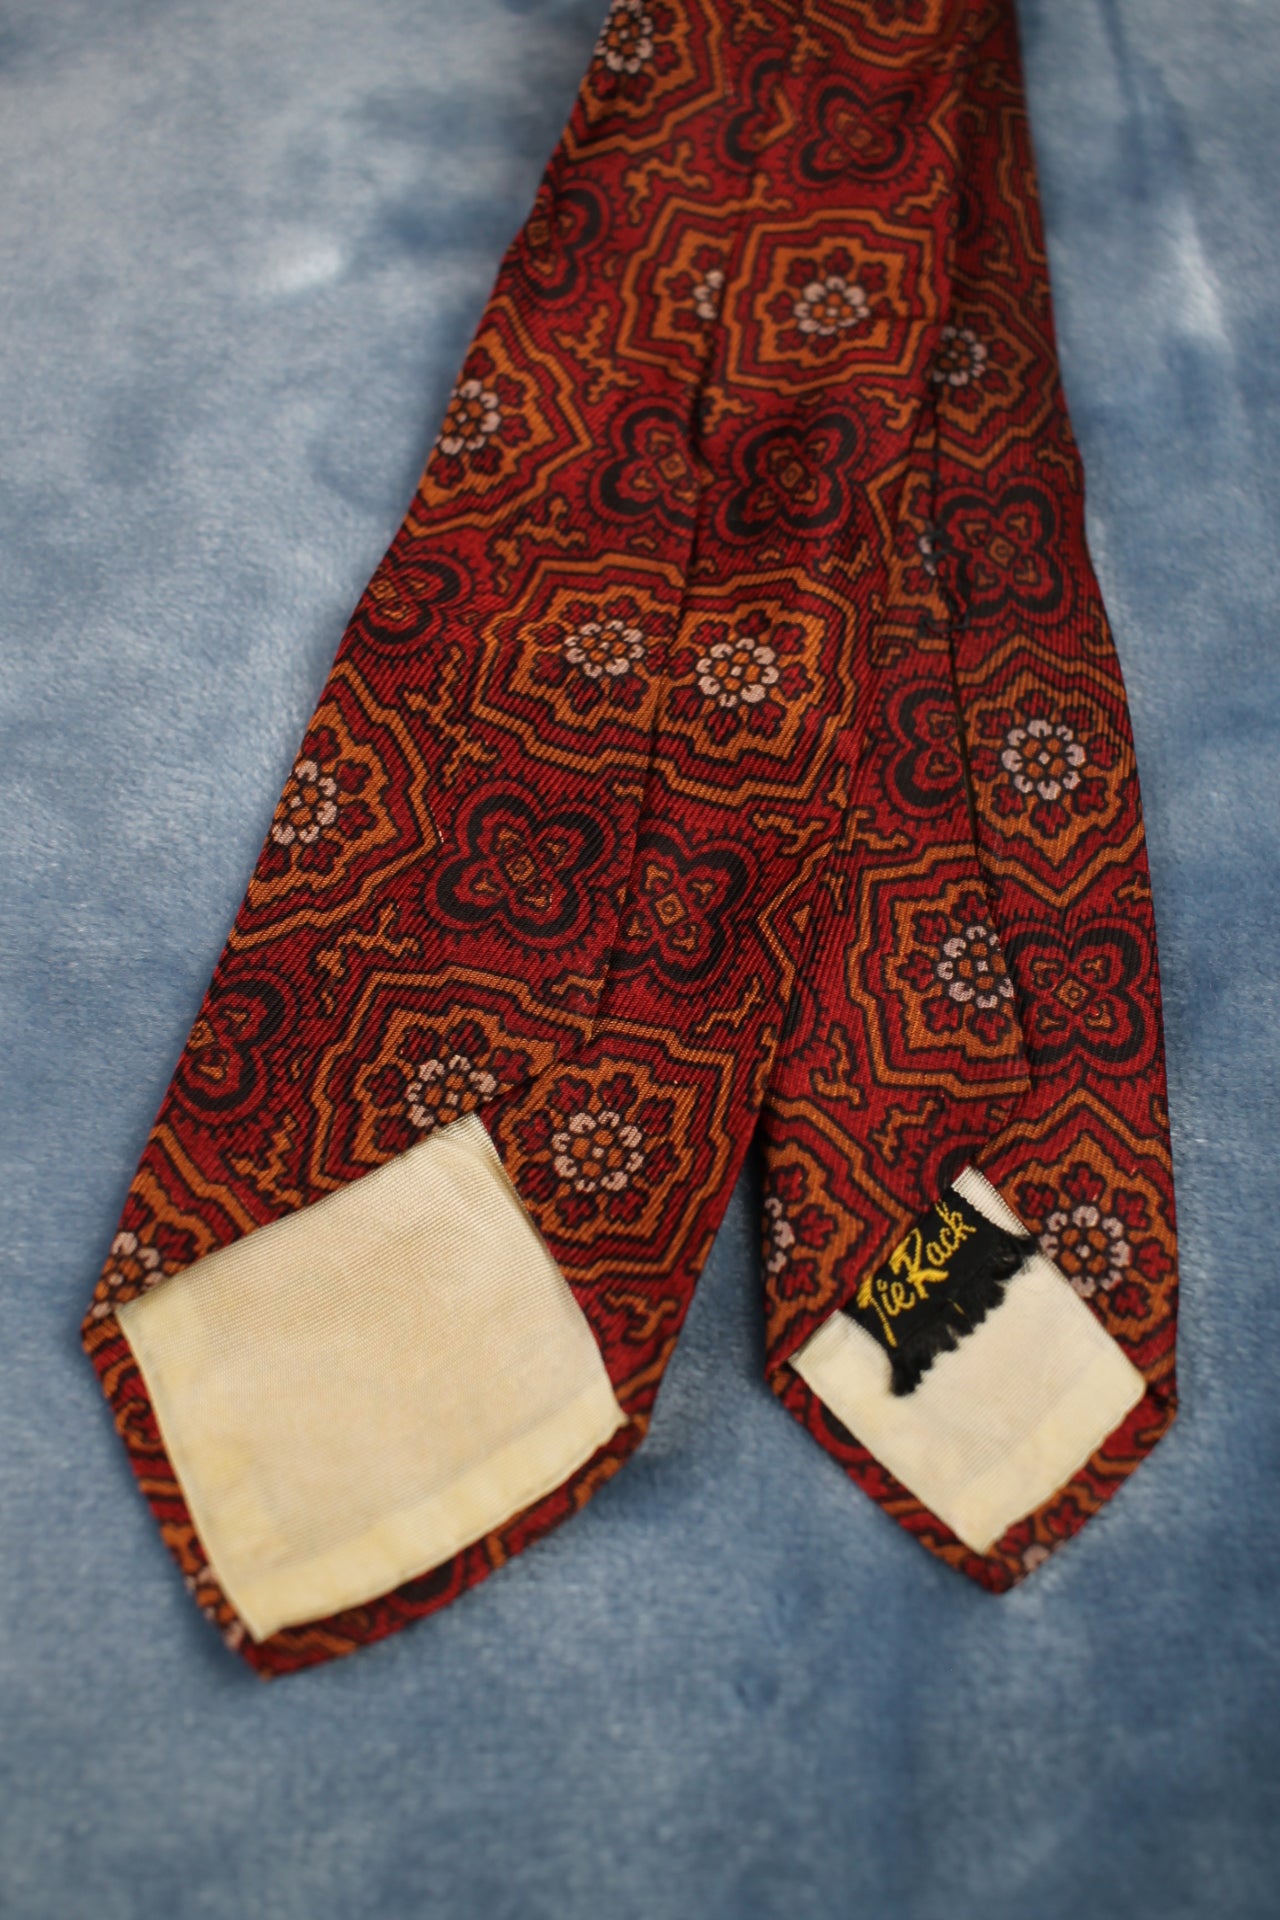 Vintage Tie Rack 1940s/50s red brown black pattern tie